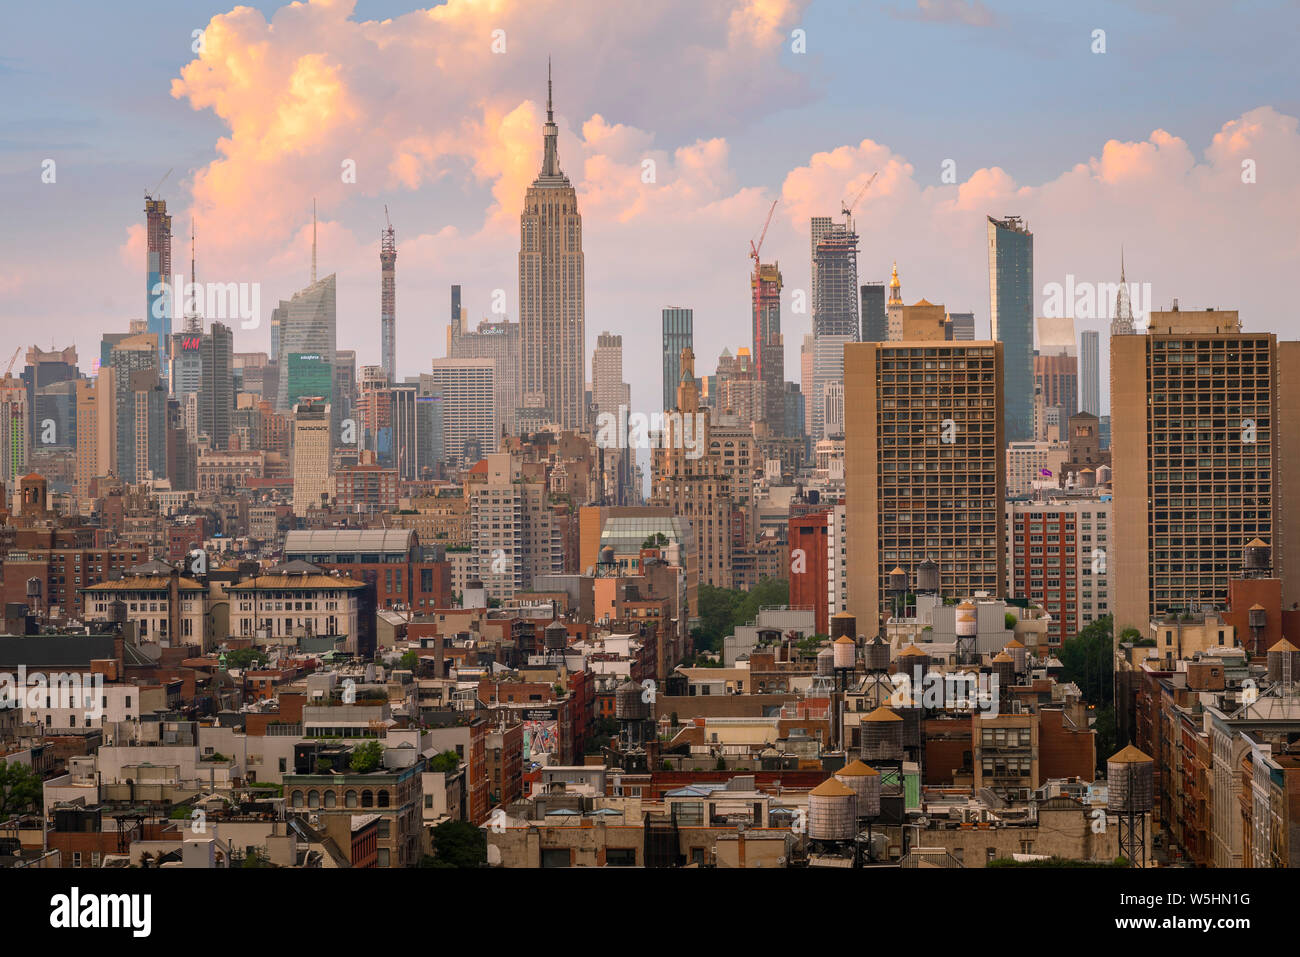 La Ciudad de Nueva York, vista desde Tribeca en el centro de Soho, el West Village y Chelsea hacia el horizonte de Manhattan, Nueva York, EE.UU.. Foto de stock